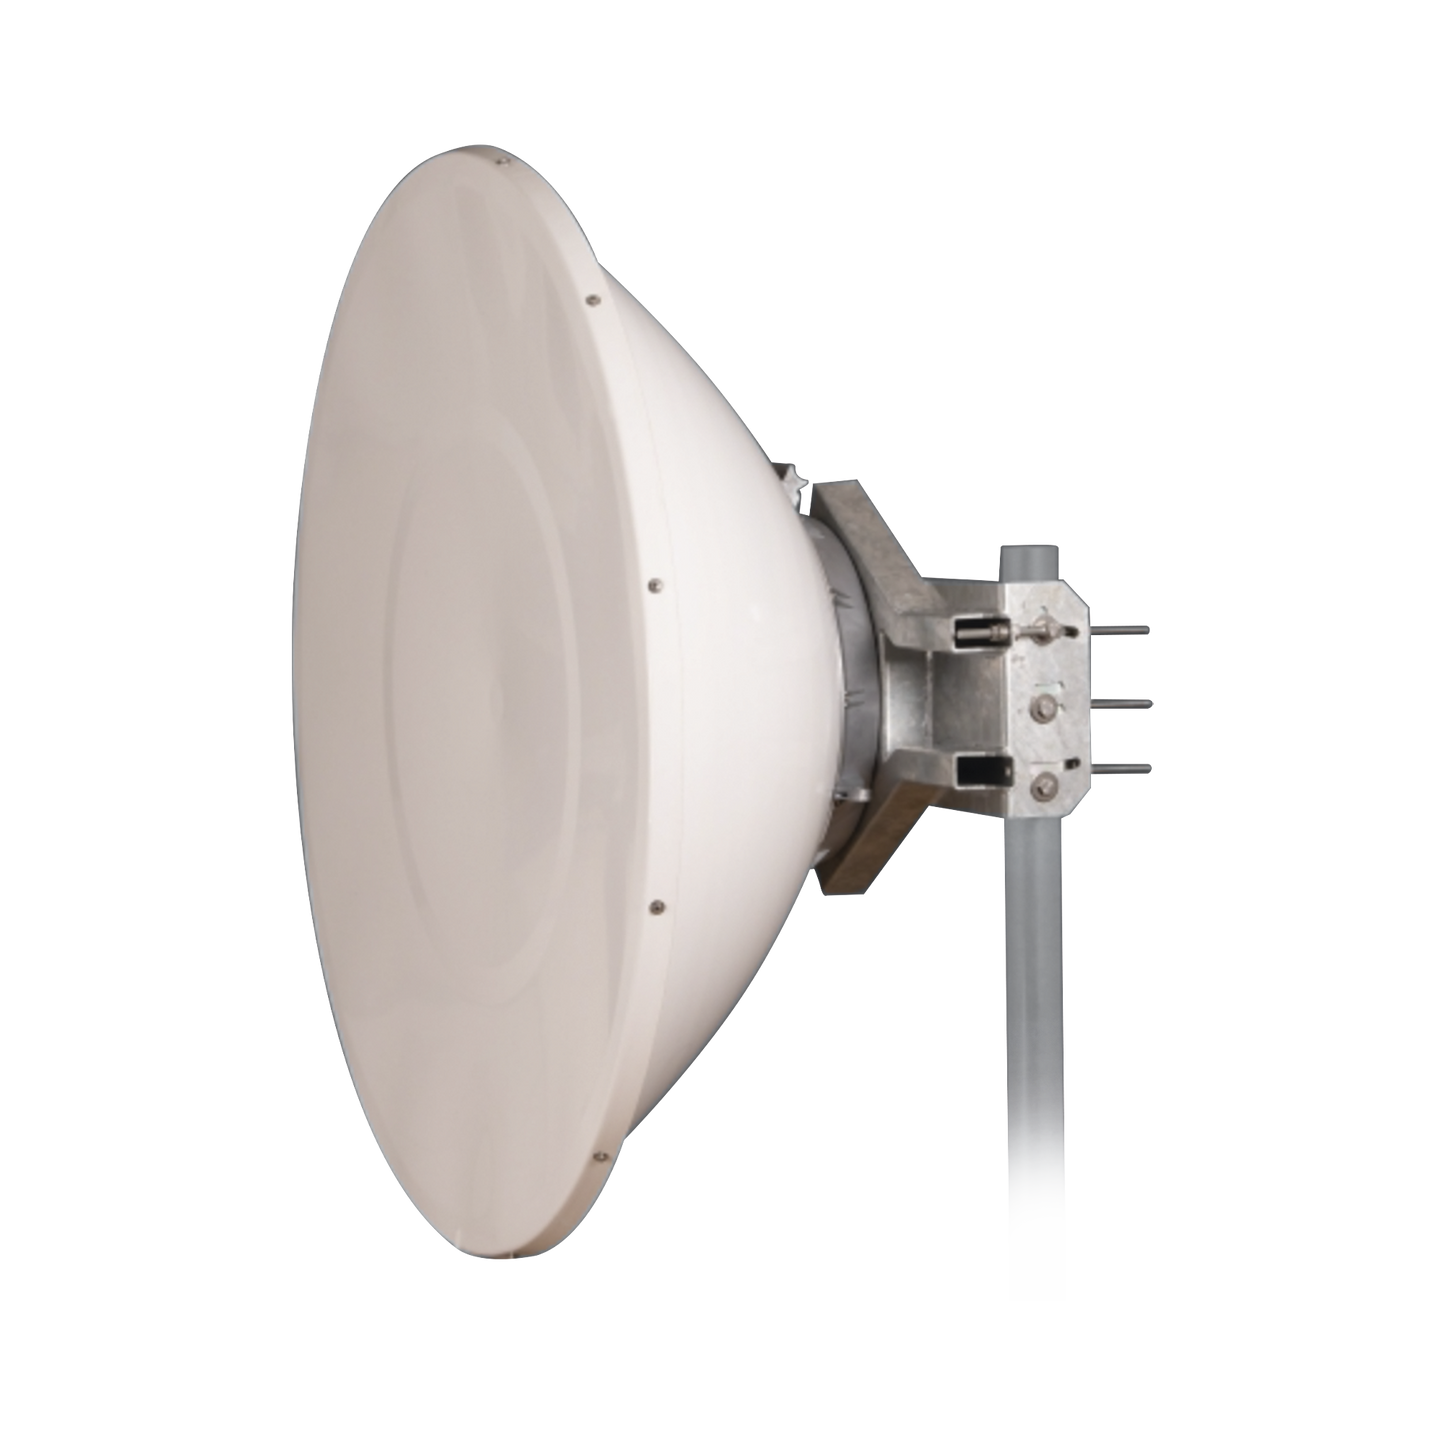 Antena Direccional de Alto Rendimiento / 36 dBi / 4 ft / 5.9-7 GHz / Conectores N-Macho / Alto Aislamiento al Ruido / Fácil Montaje y herraje de acero inoxidable /  Radomo Incluido